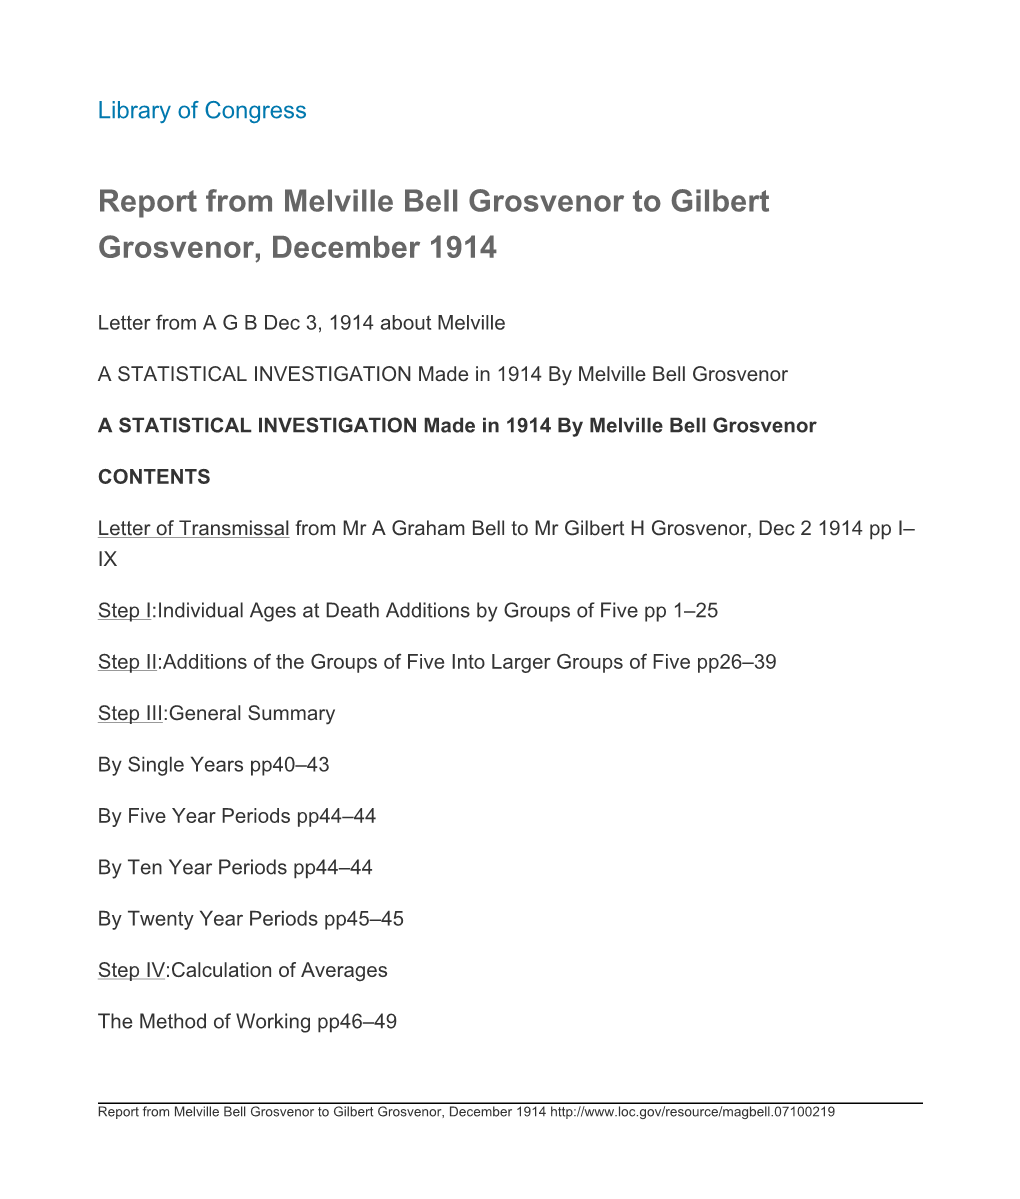 Report from Melville Bell Grosvenor to Gilbert Grosvenor, December 1914